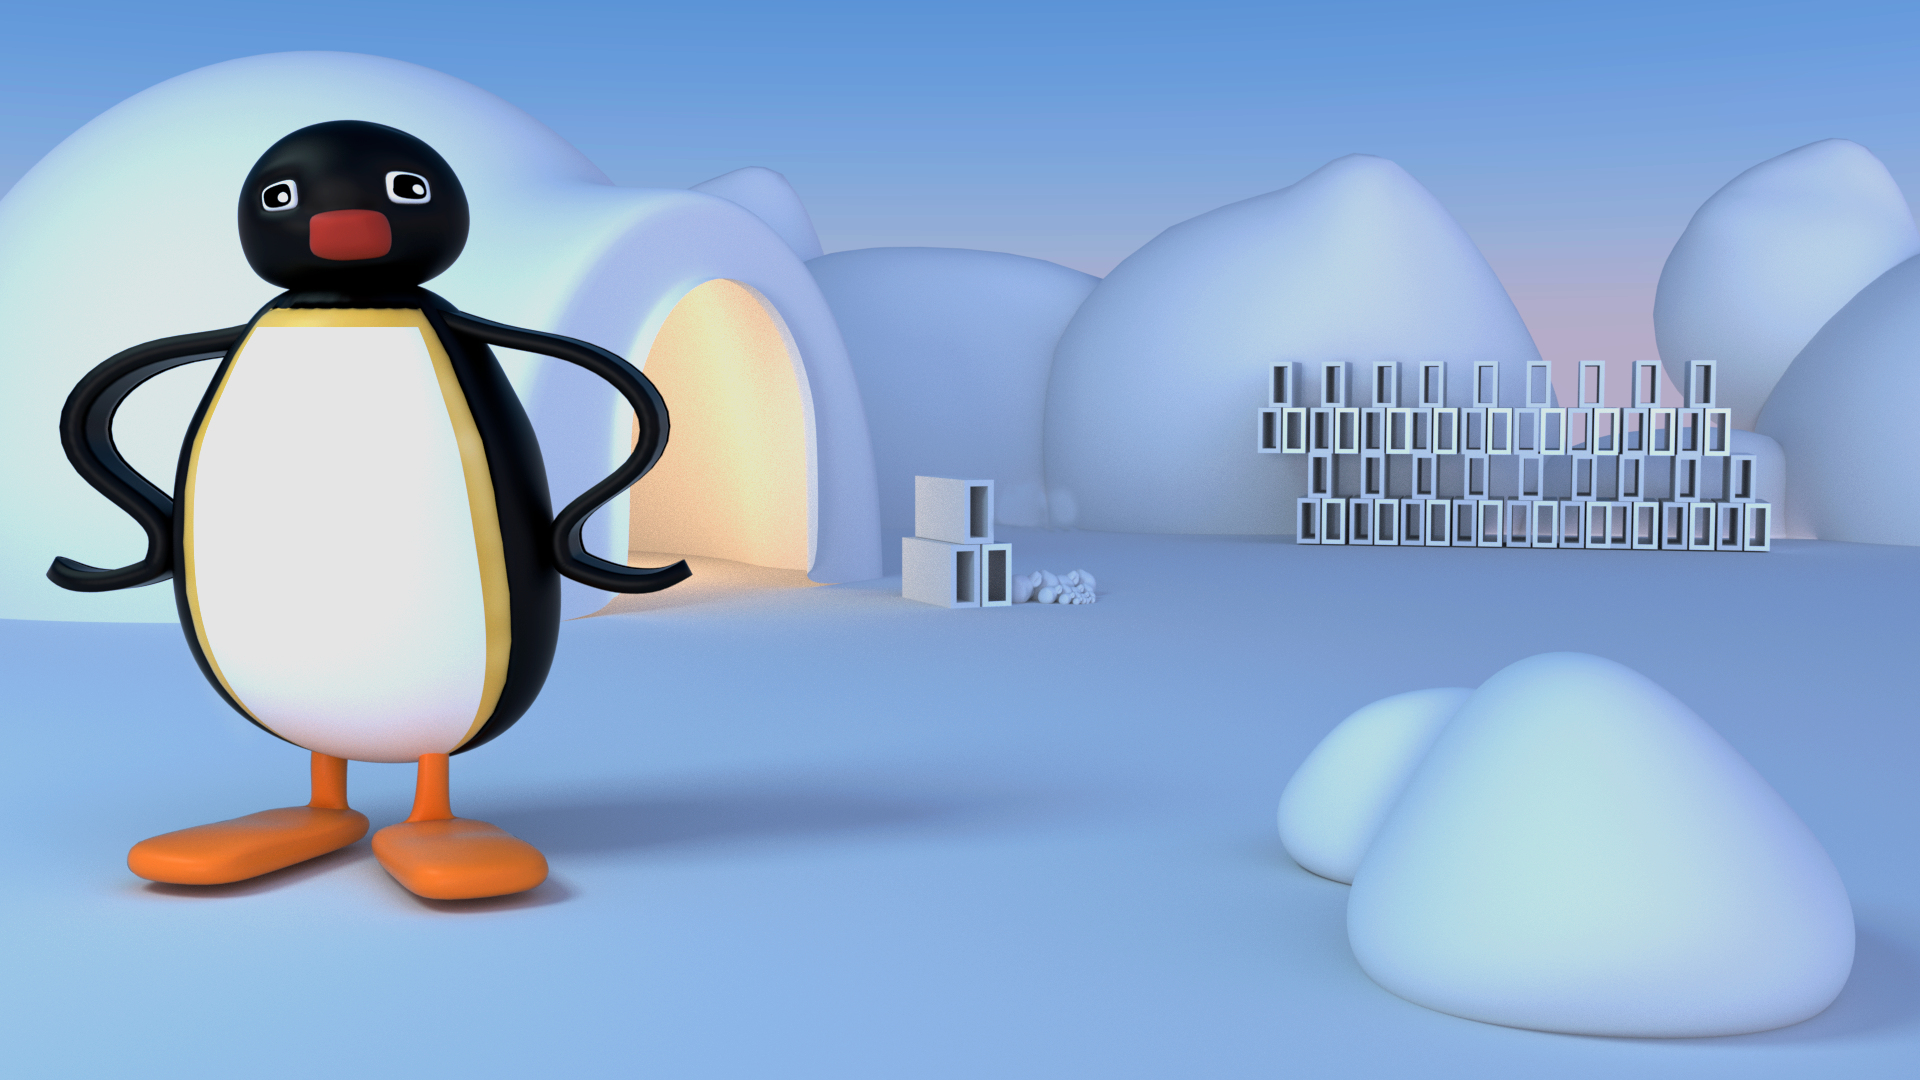 Pinguino 3D model - TurboSquid 1189229